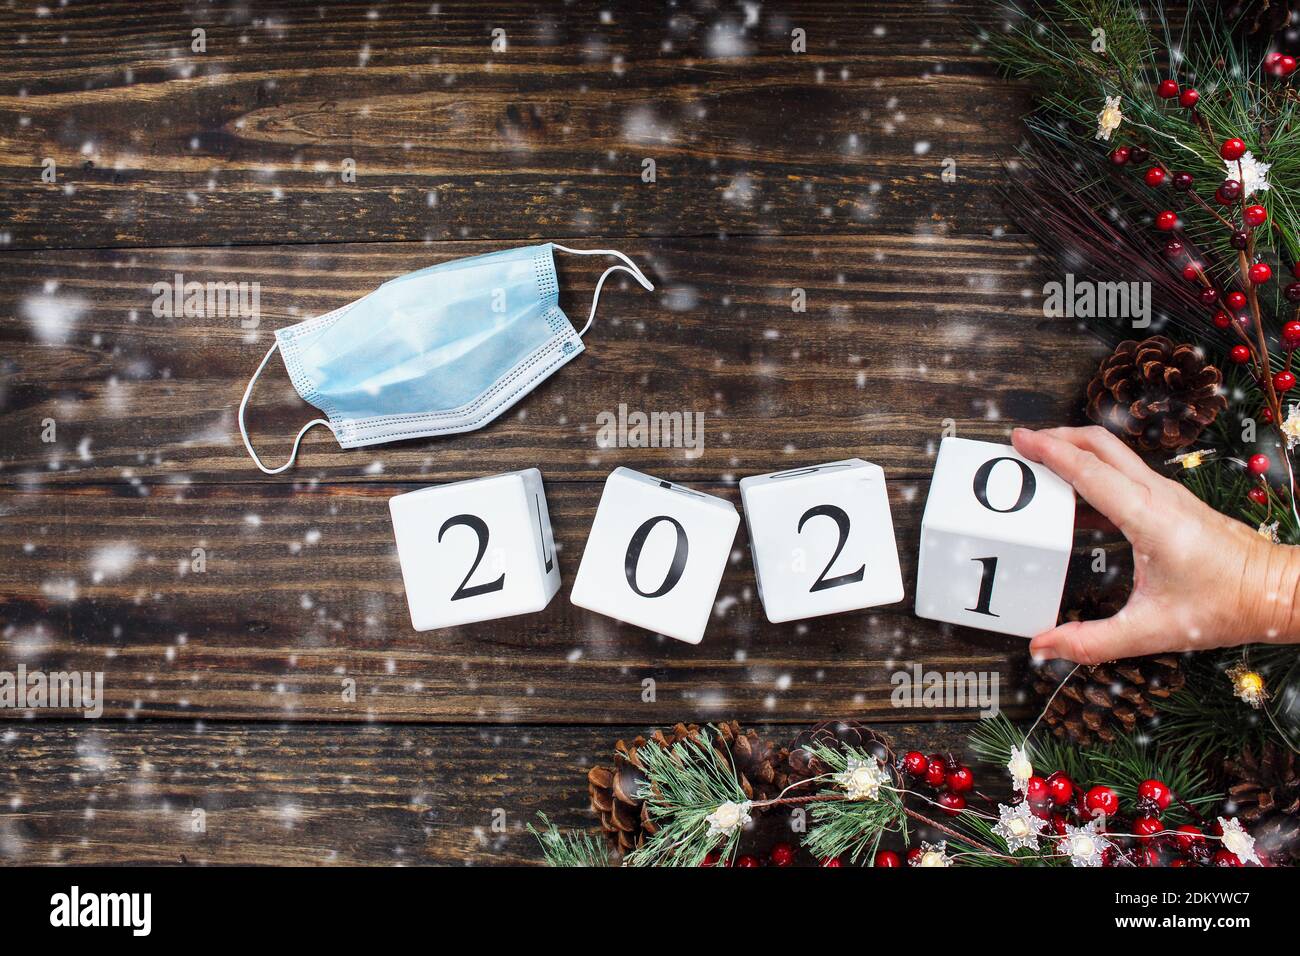 Frau Hand kippt Neujahr 2020 Holz Kalender Blöcke zu 2021. Medizinische Maske, Weihnachtsbaumlichter, Dekorationen, Kiefernzweige, rote Winterberrie Stockfoto